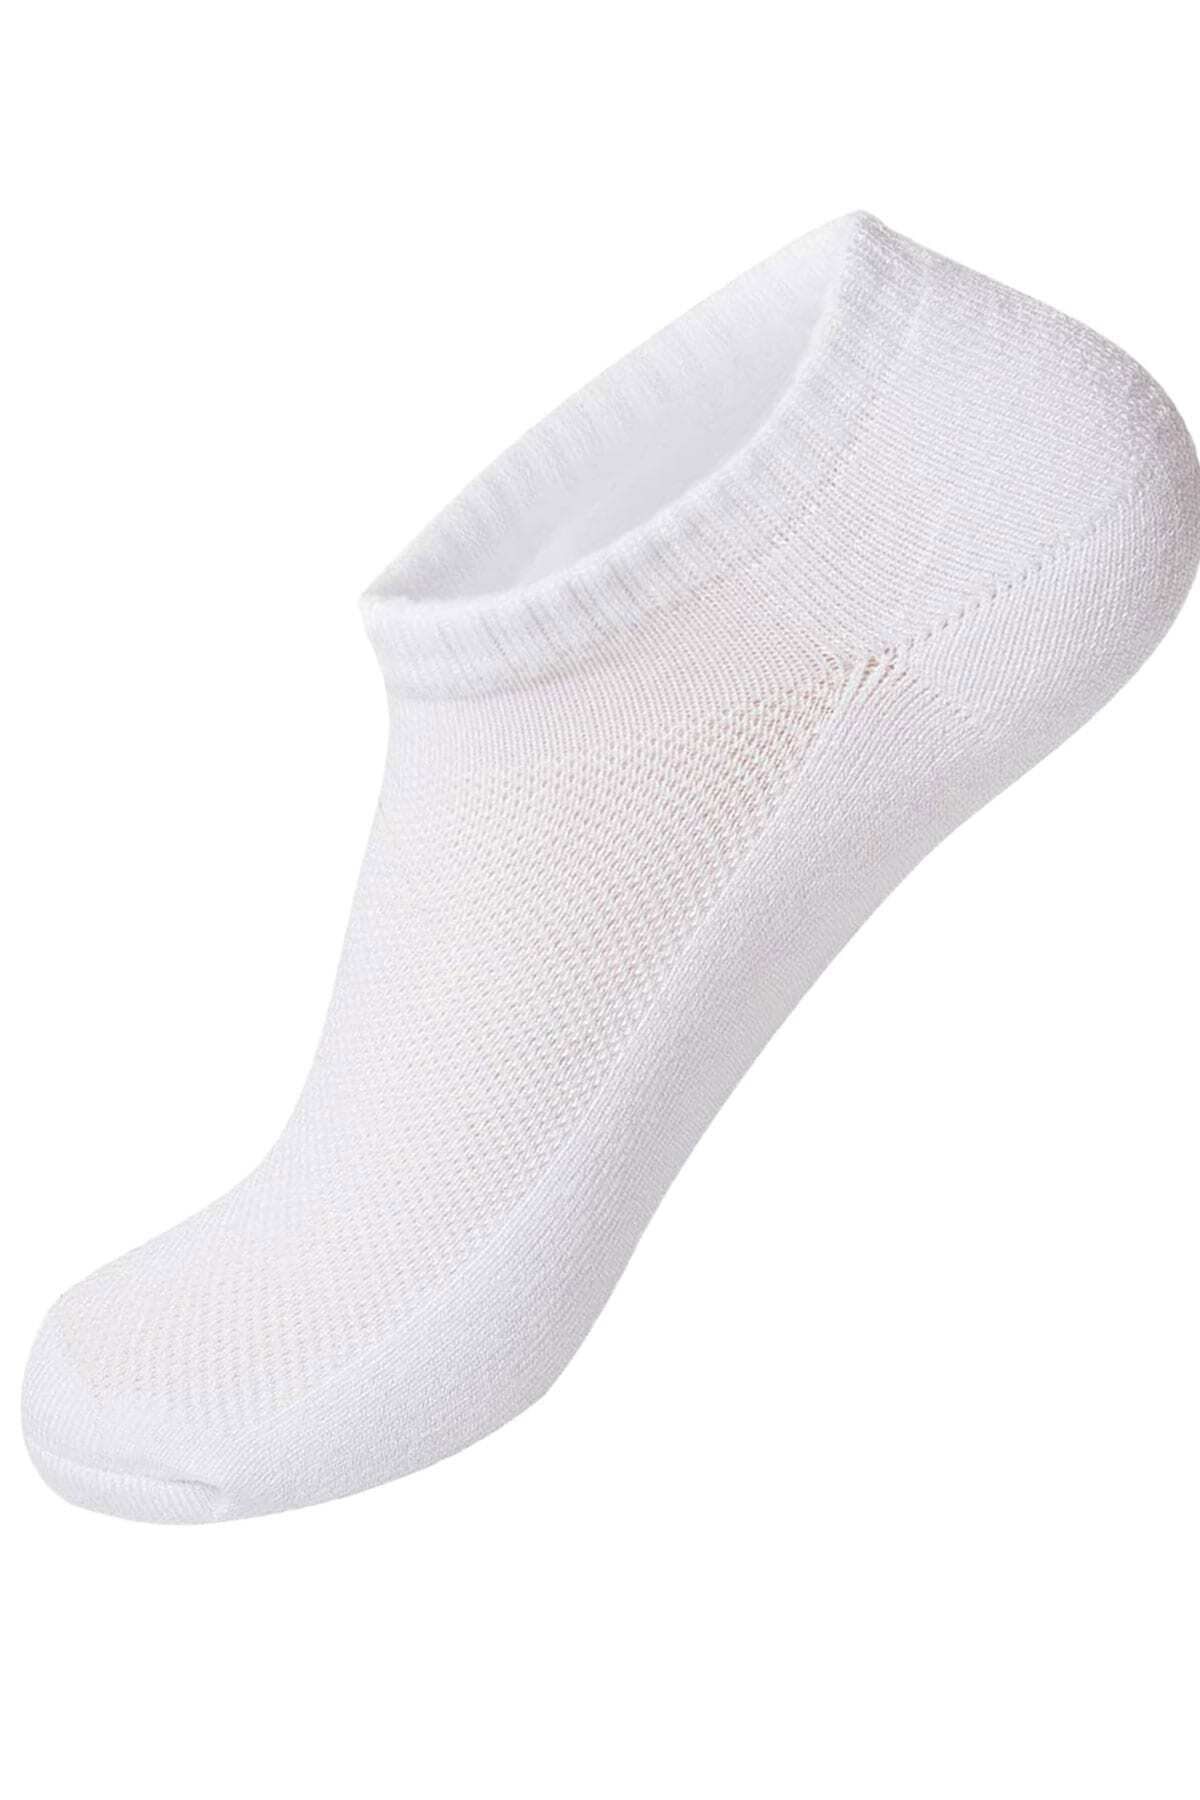 TAMPAP Erkek Patik Çorap Snekars Çorabı 6'lı Paket